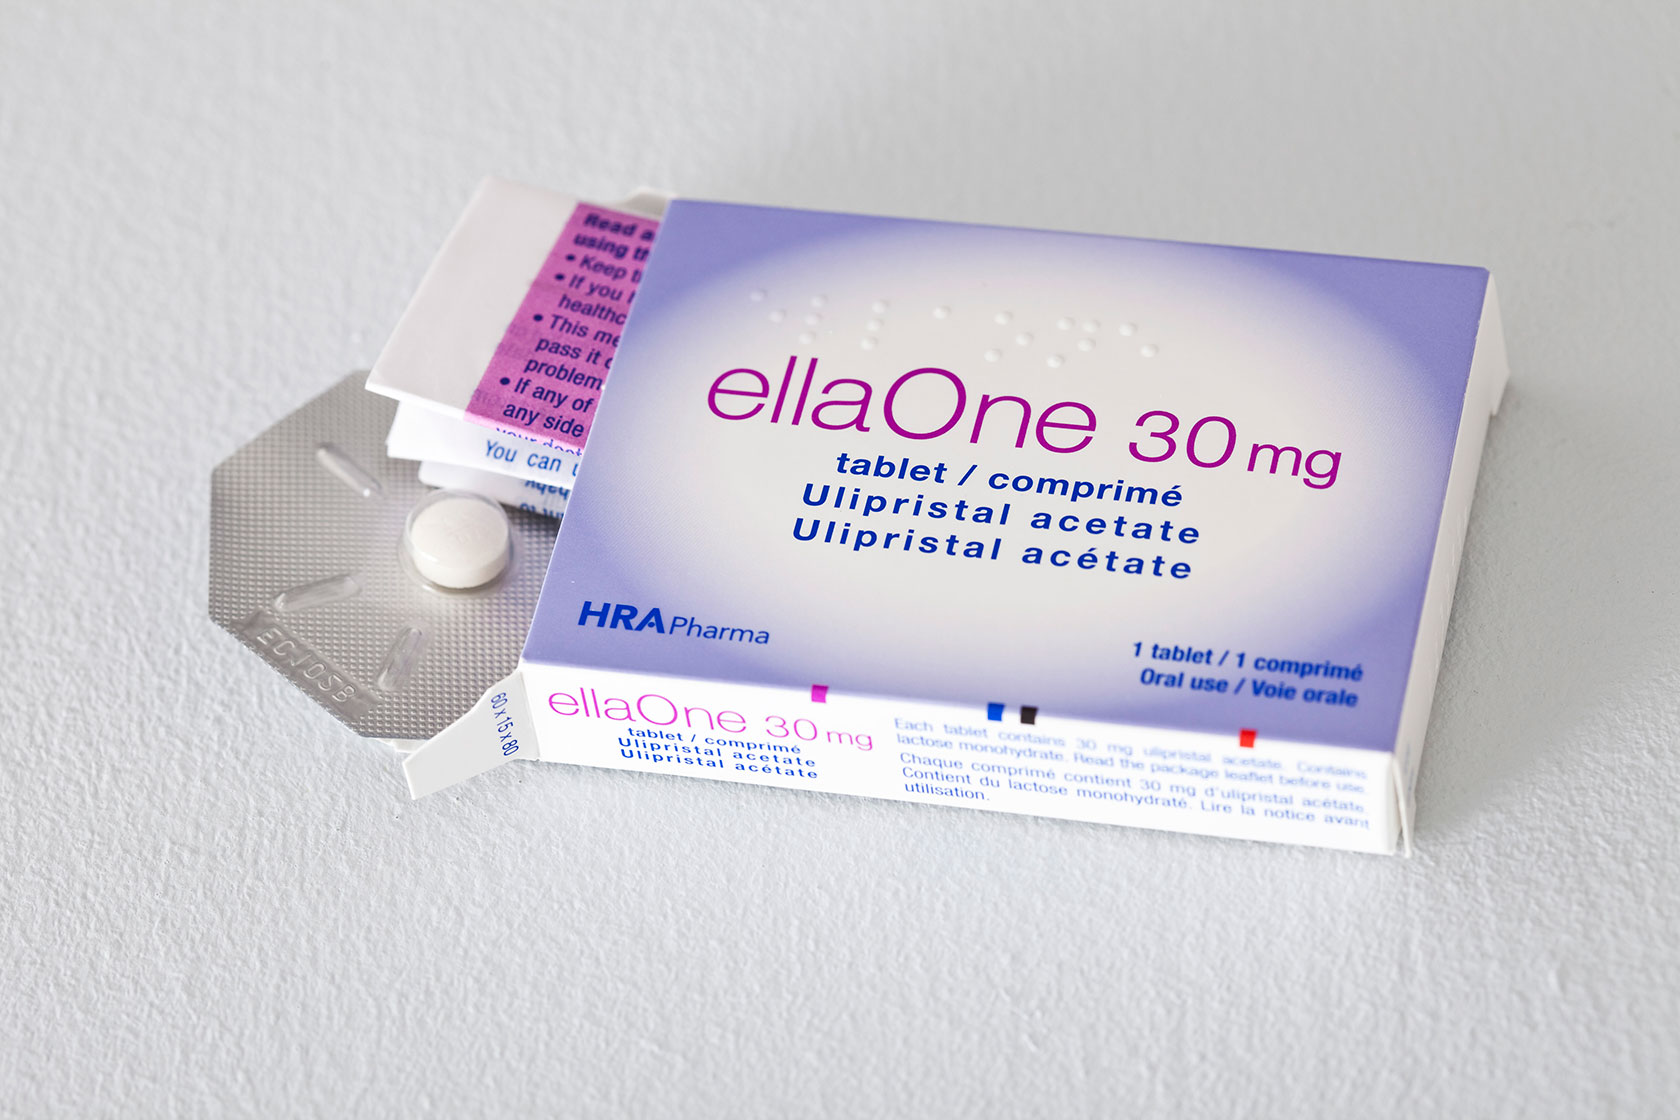 Photo shows a purple/white box of the Ella pill